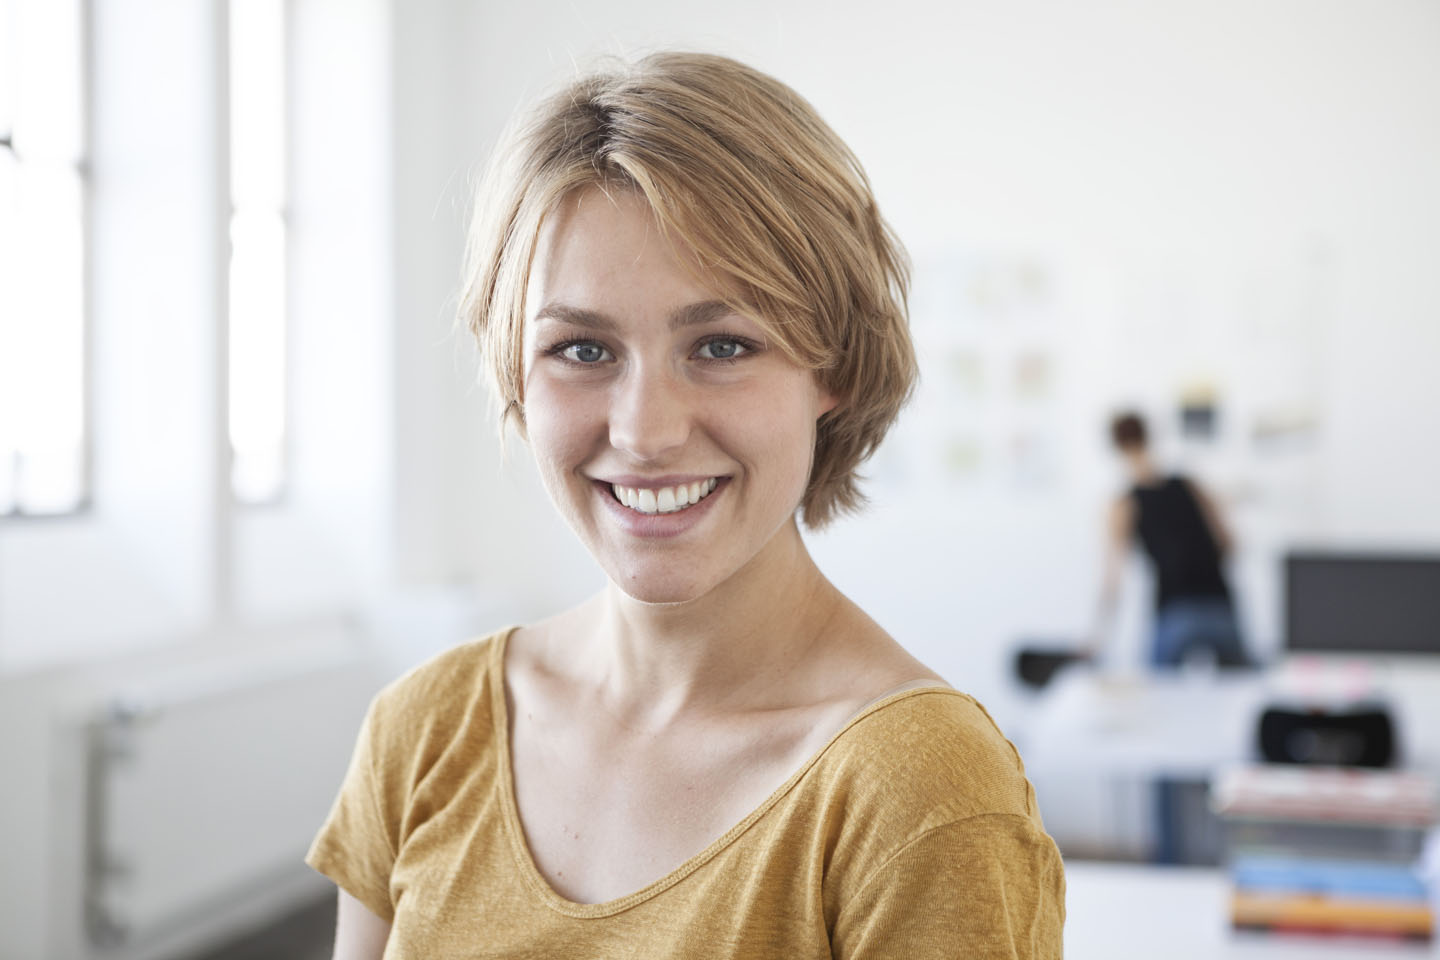 Portraitfoto einer jungen Frau, die in die Kamera lächelt.